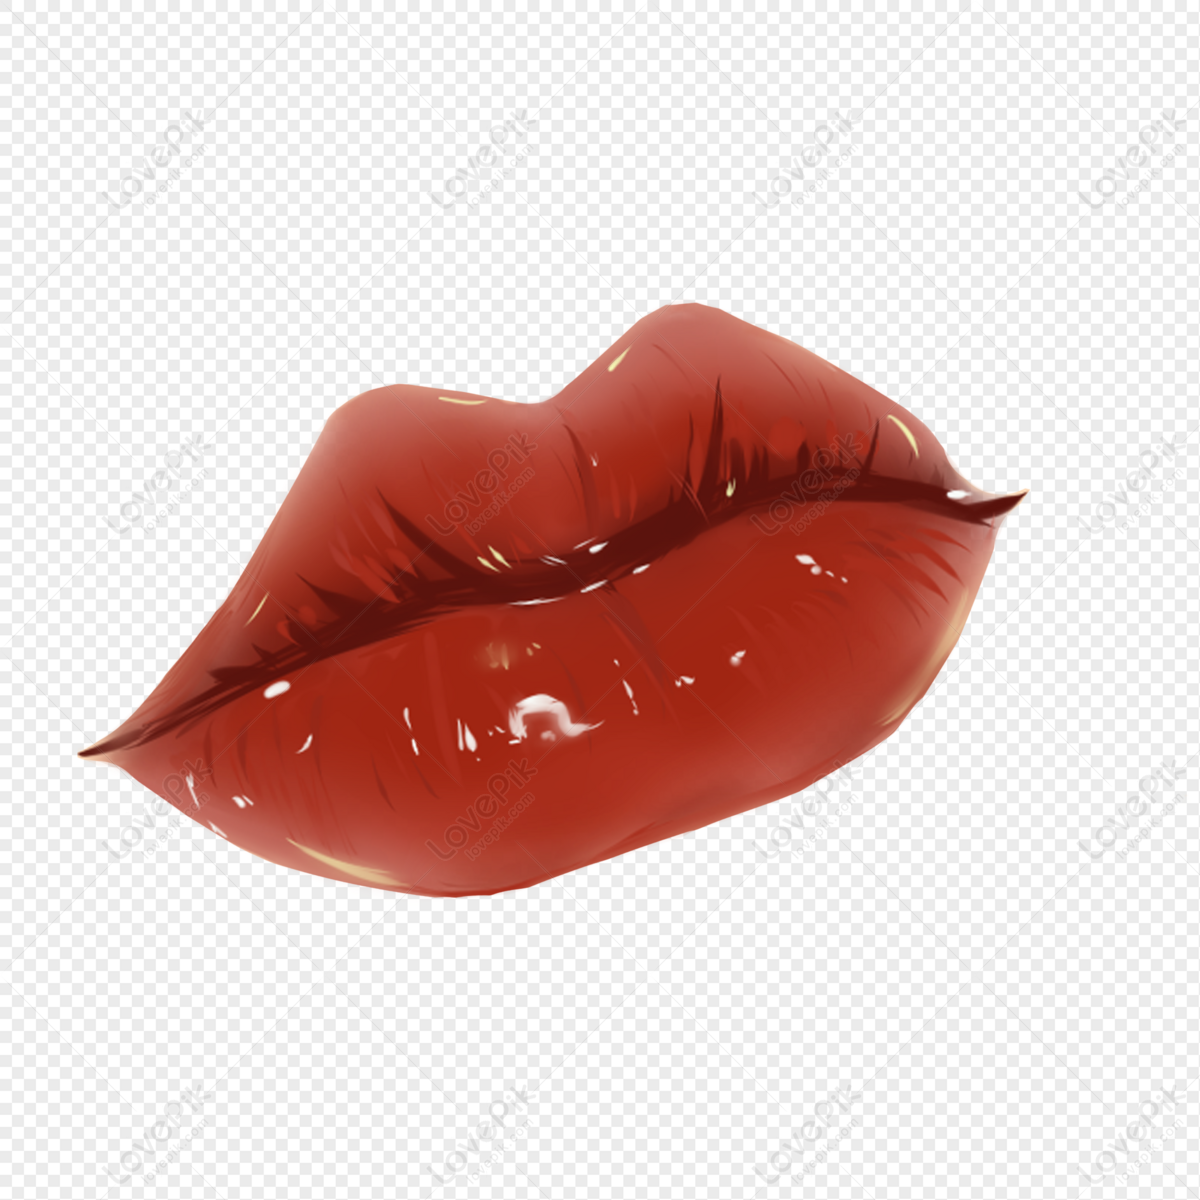 Đôi môi đỏ quyến rũ luôn là một chủ đề hấp dẫn và thu hút. Hãy xem ngay hình ảnh này để tận hưởng vẻ đẹp quyến rũ và nóng bỏng của đôi môi đỏ.